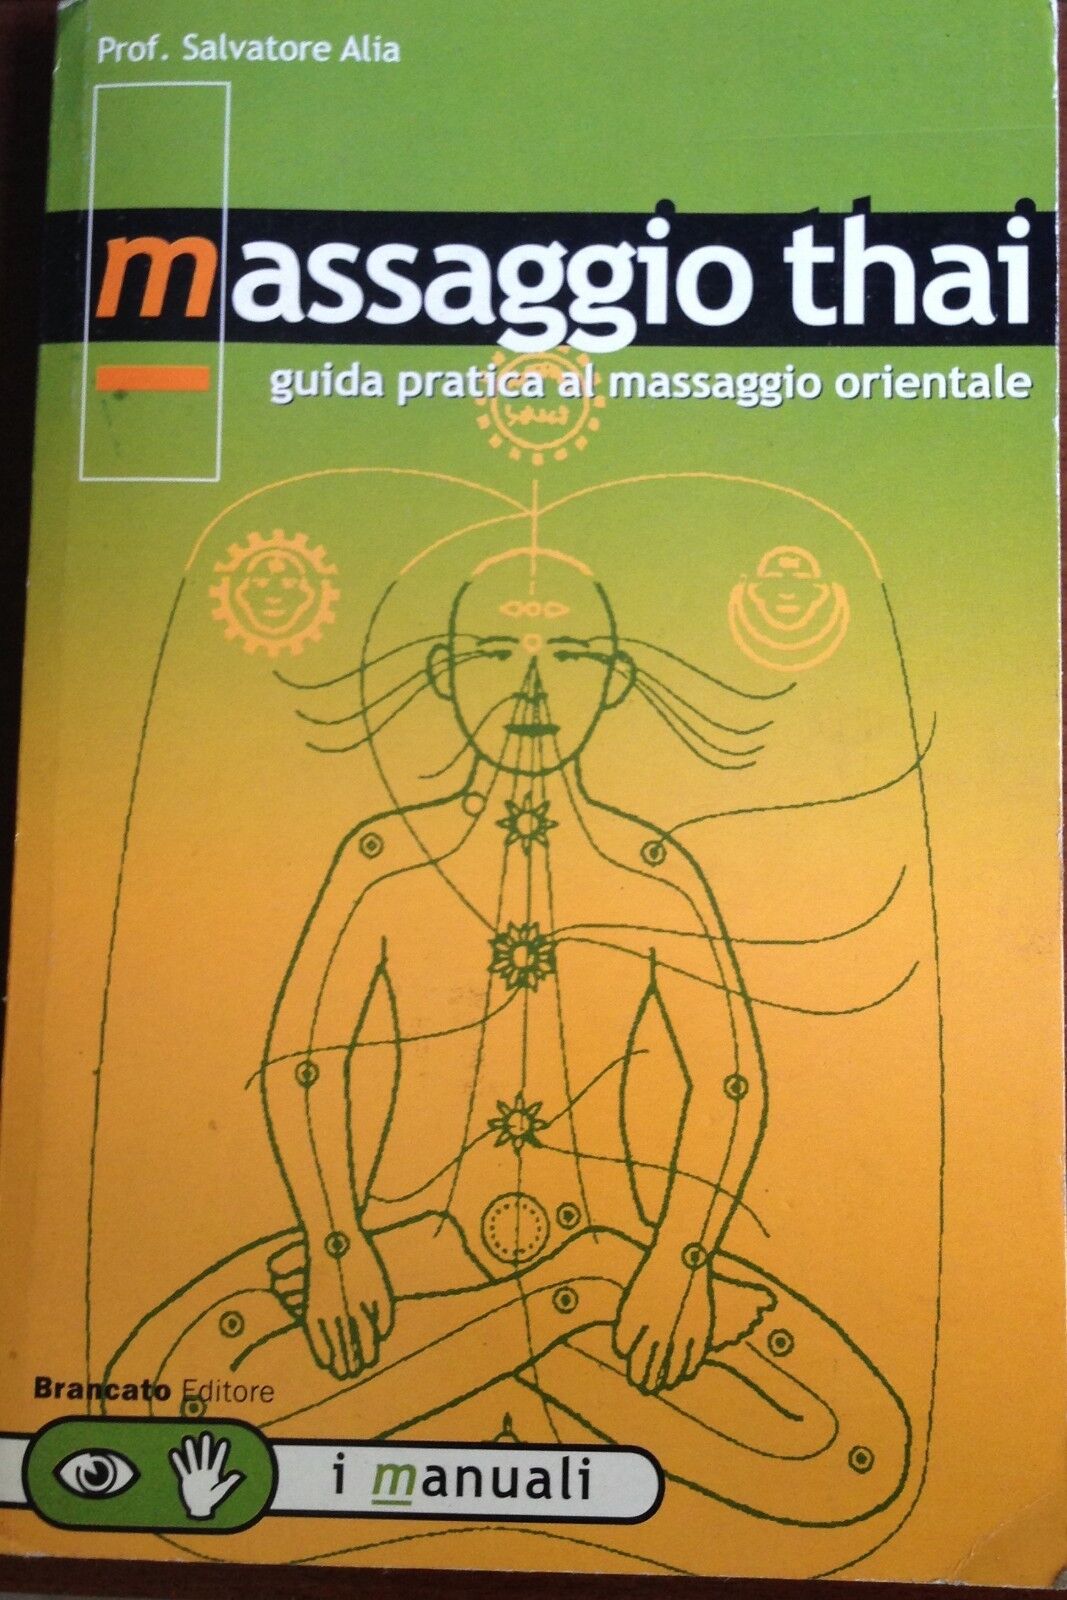 Massaggio thai-Salvatore Alia-Brancato-2002-M libro usato